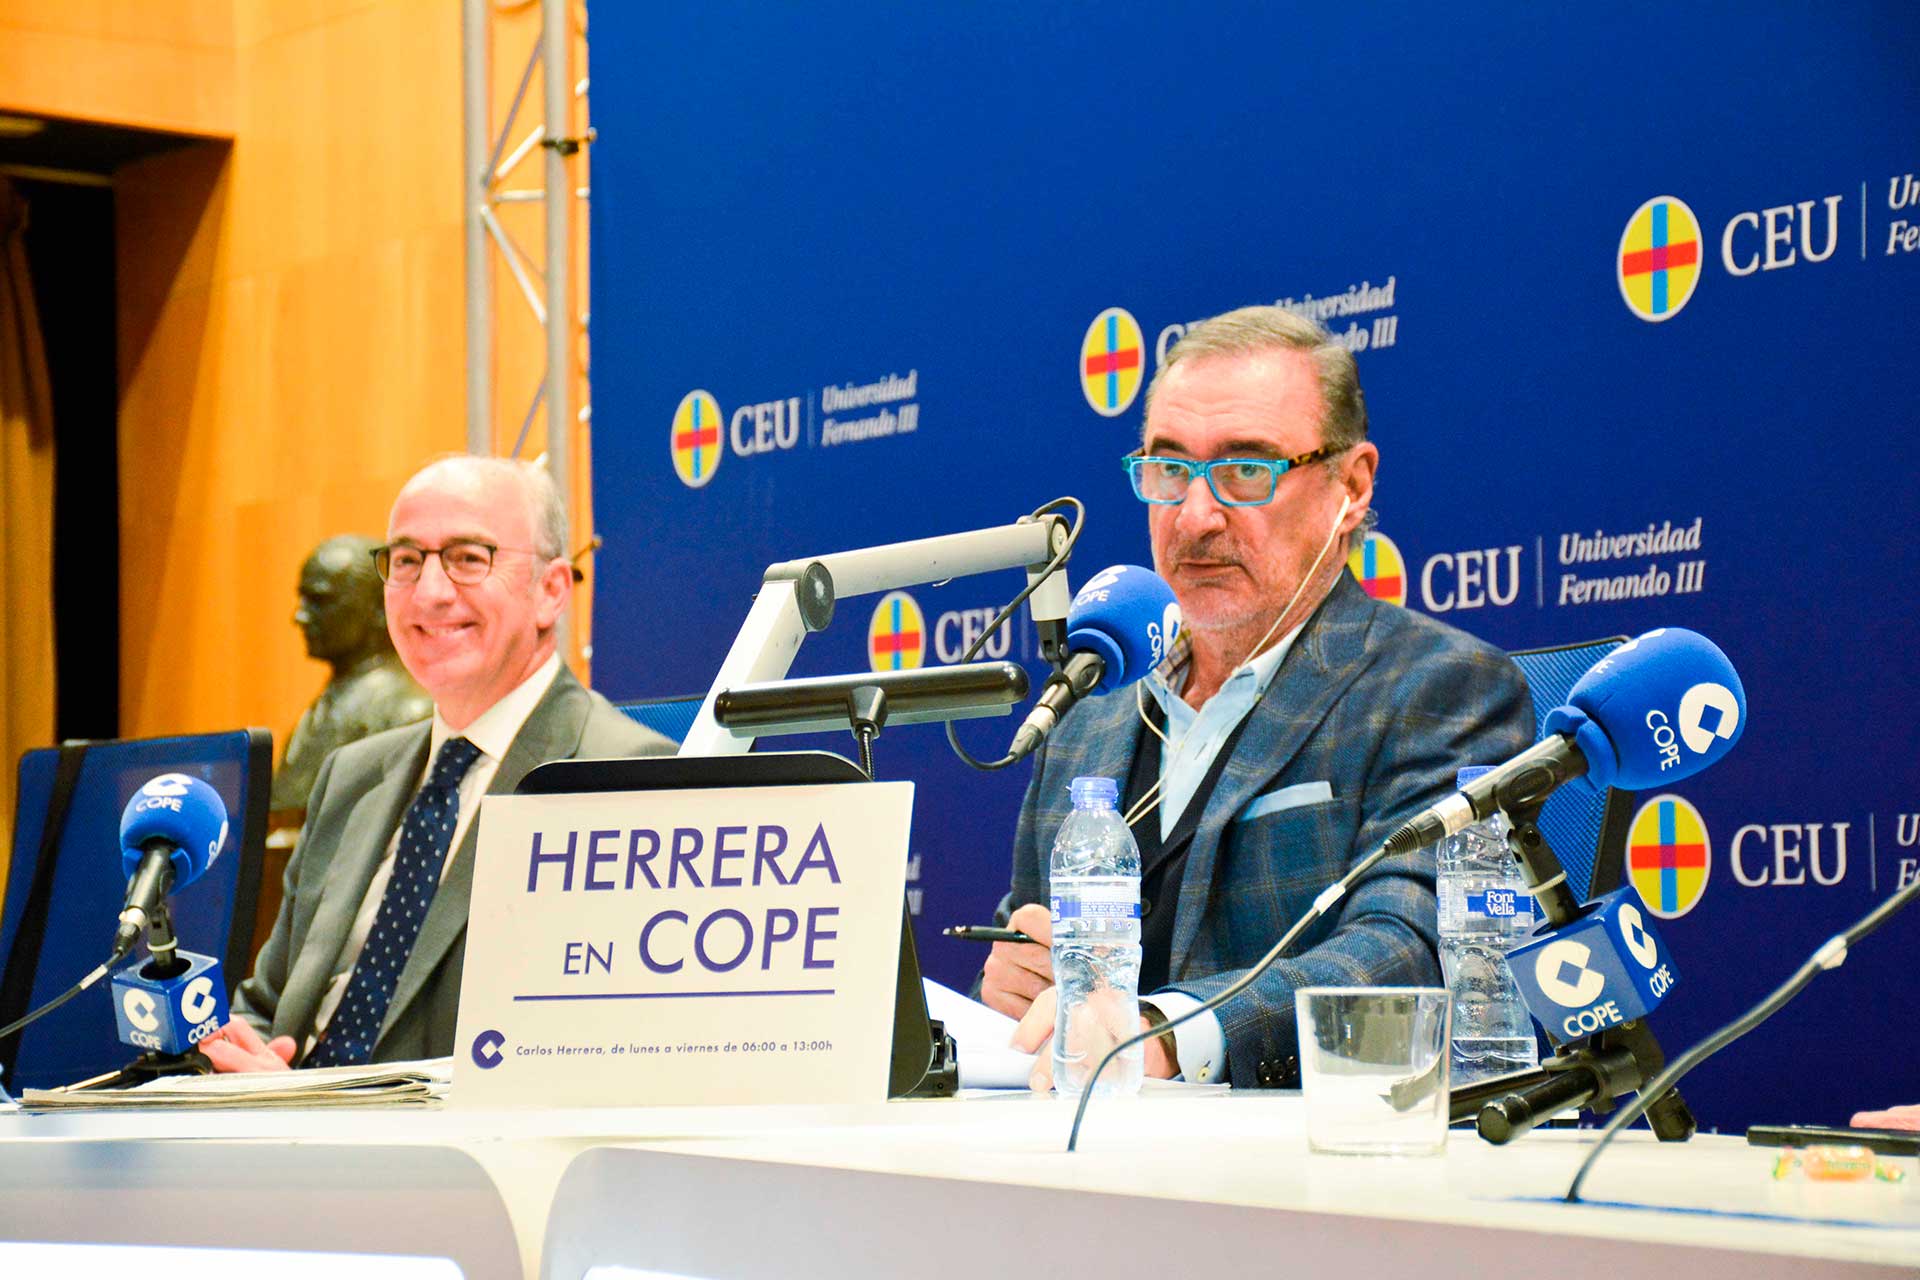 El programa Herrera en Cope emite en directo desde la CEU UF3